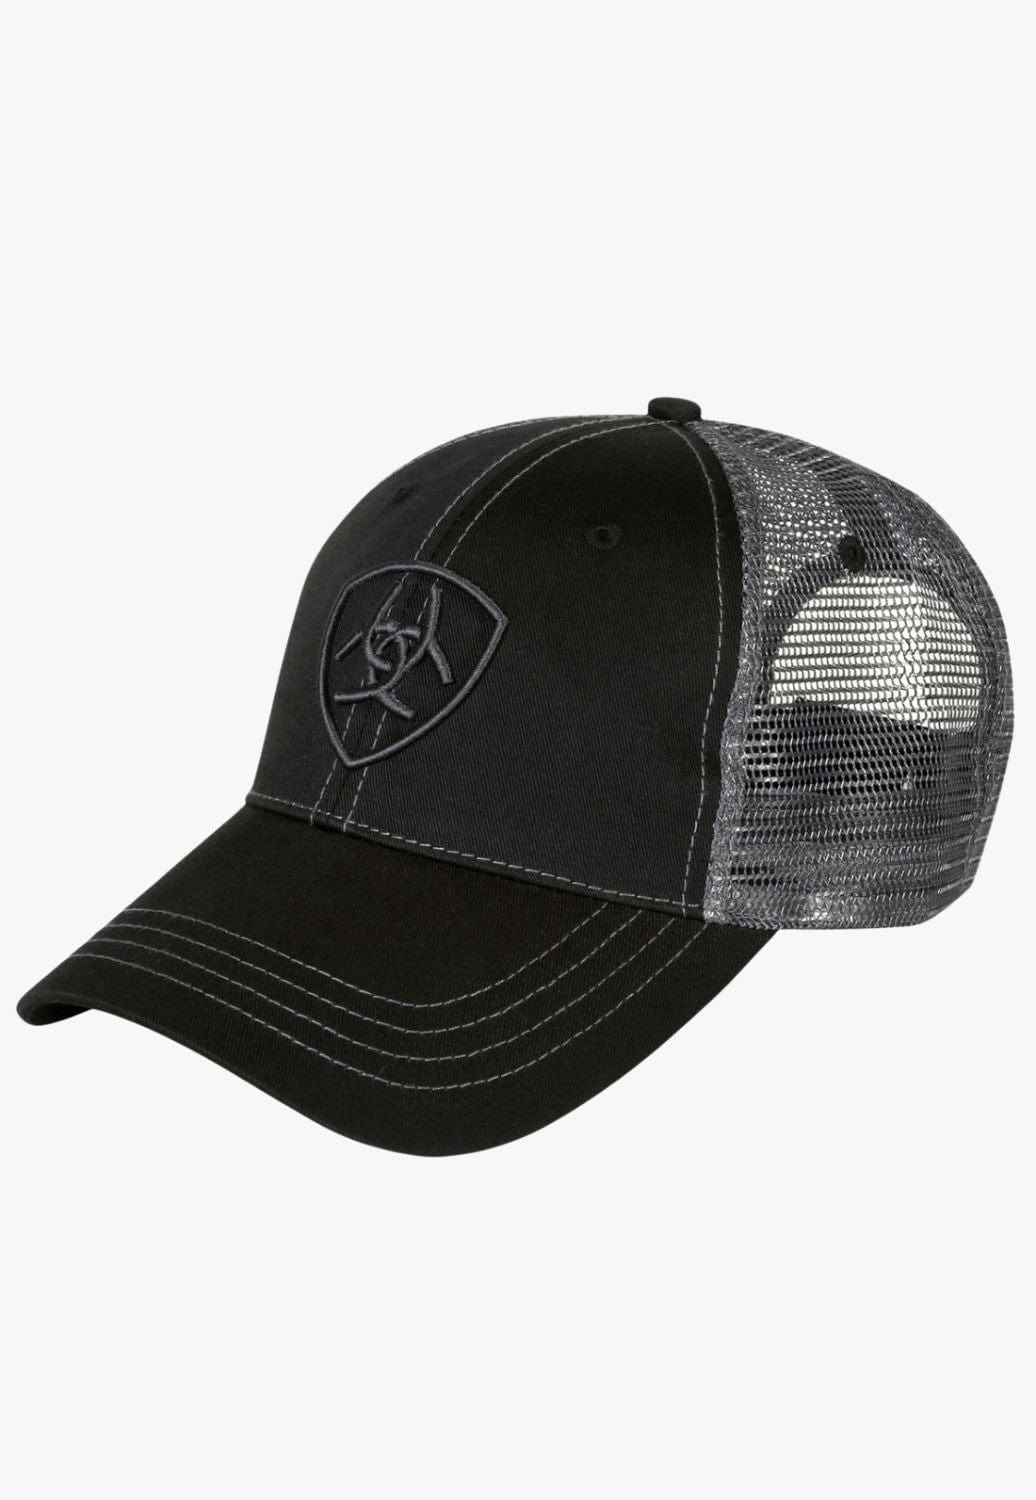 Ariat HATS - Caps OSFA / Black/Charcoal Ariat Trucker Cap